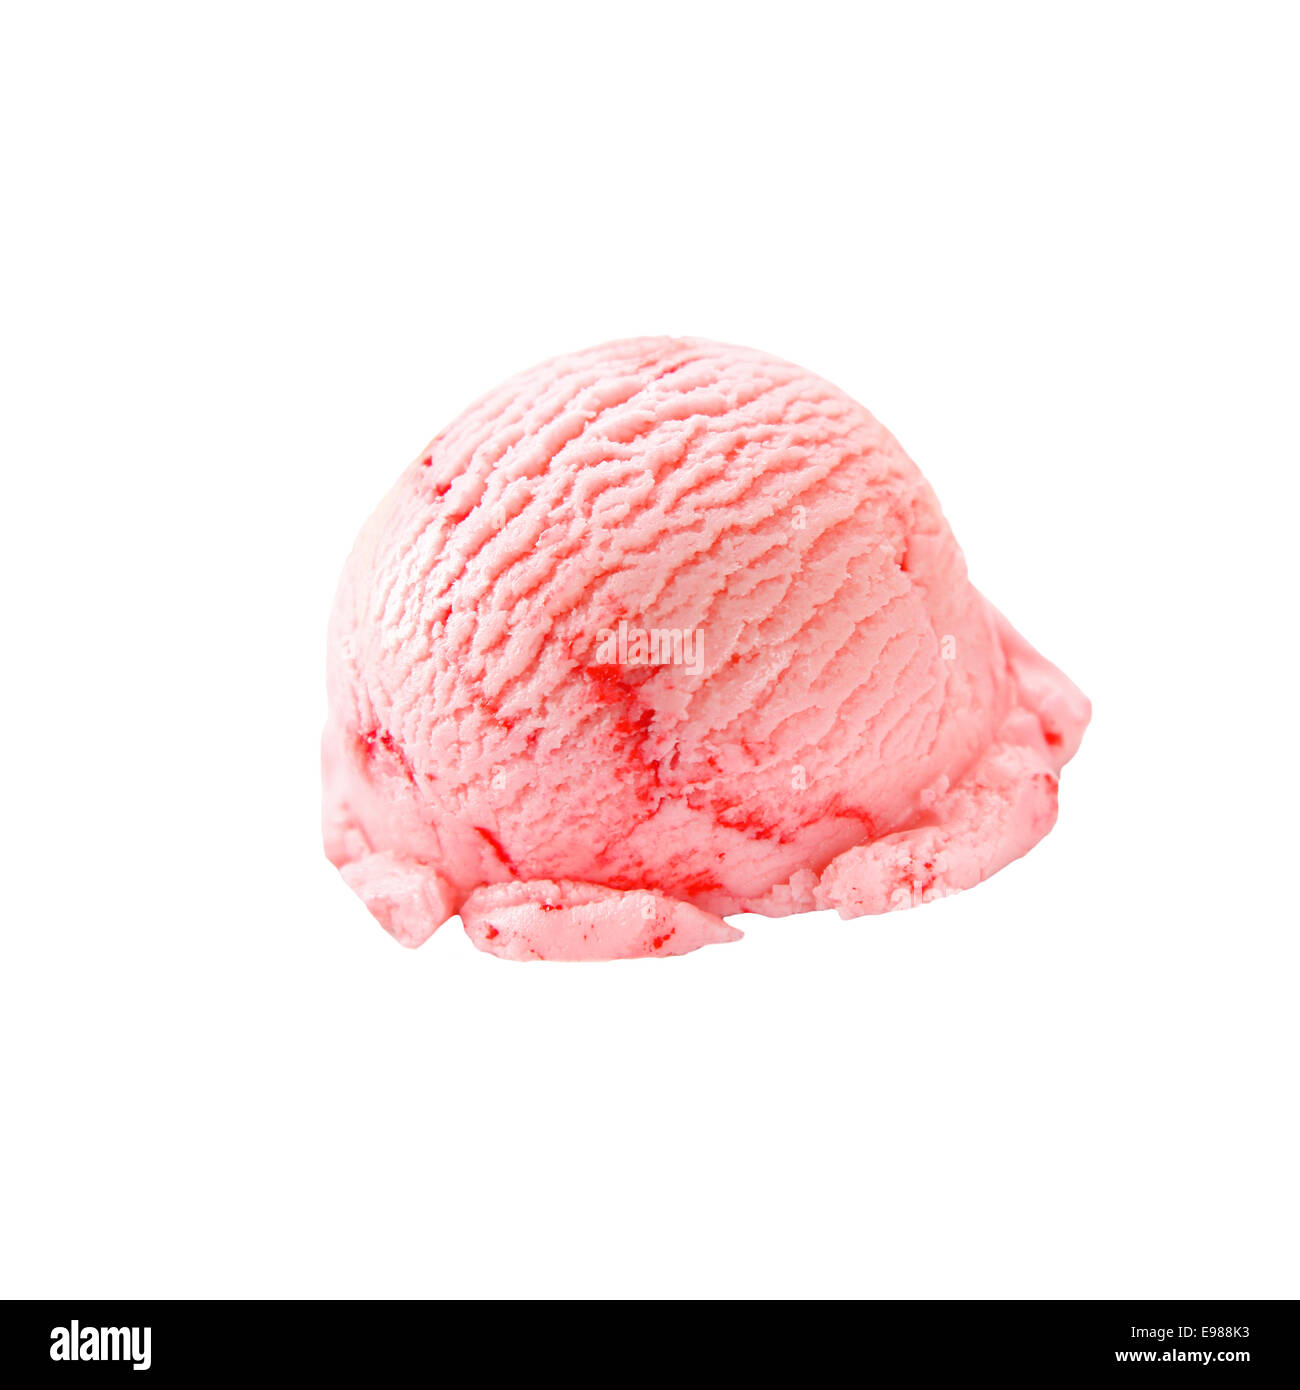 pink ice cream scoop, Stock image